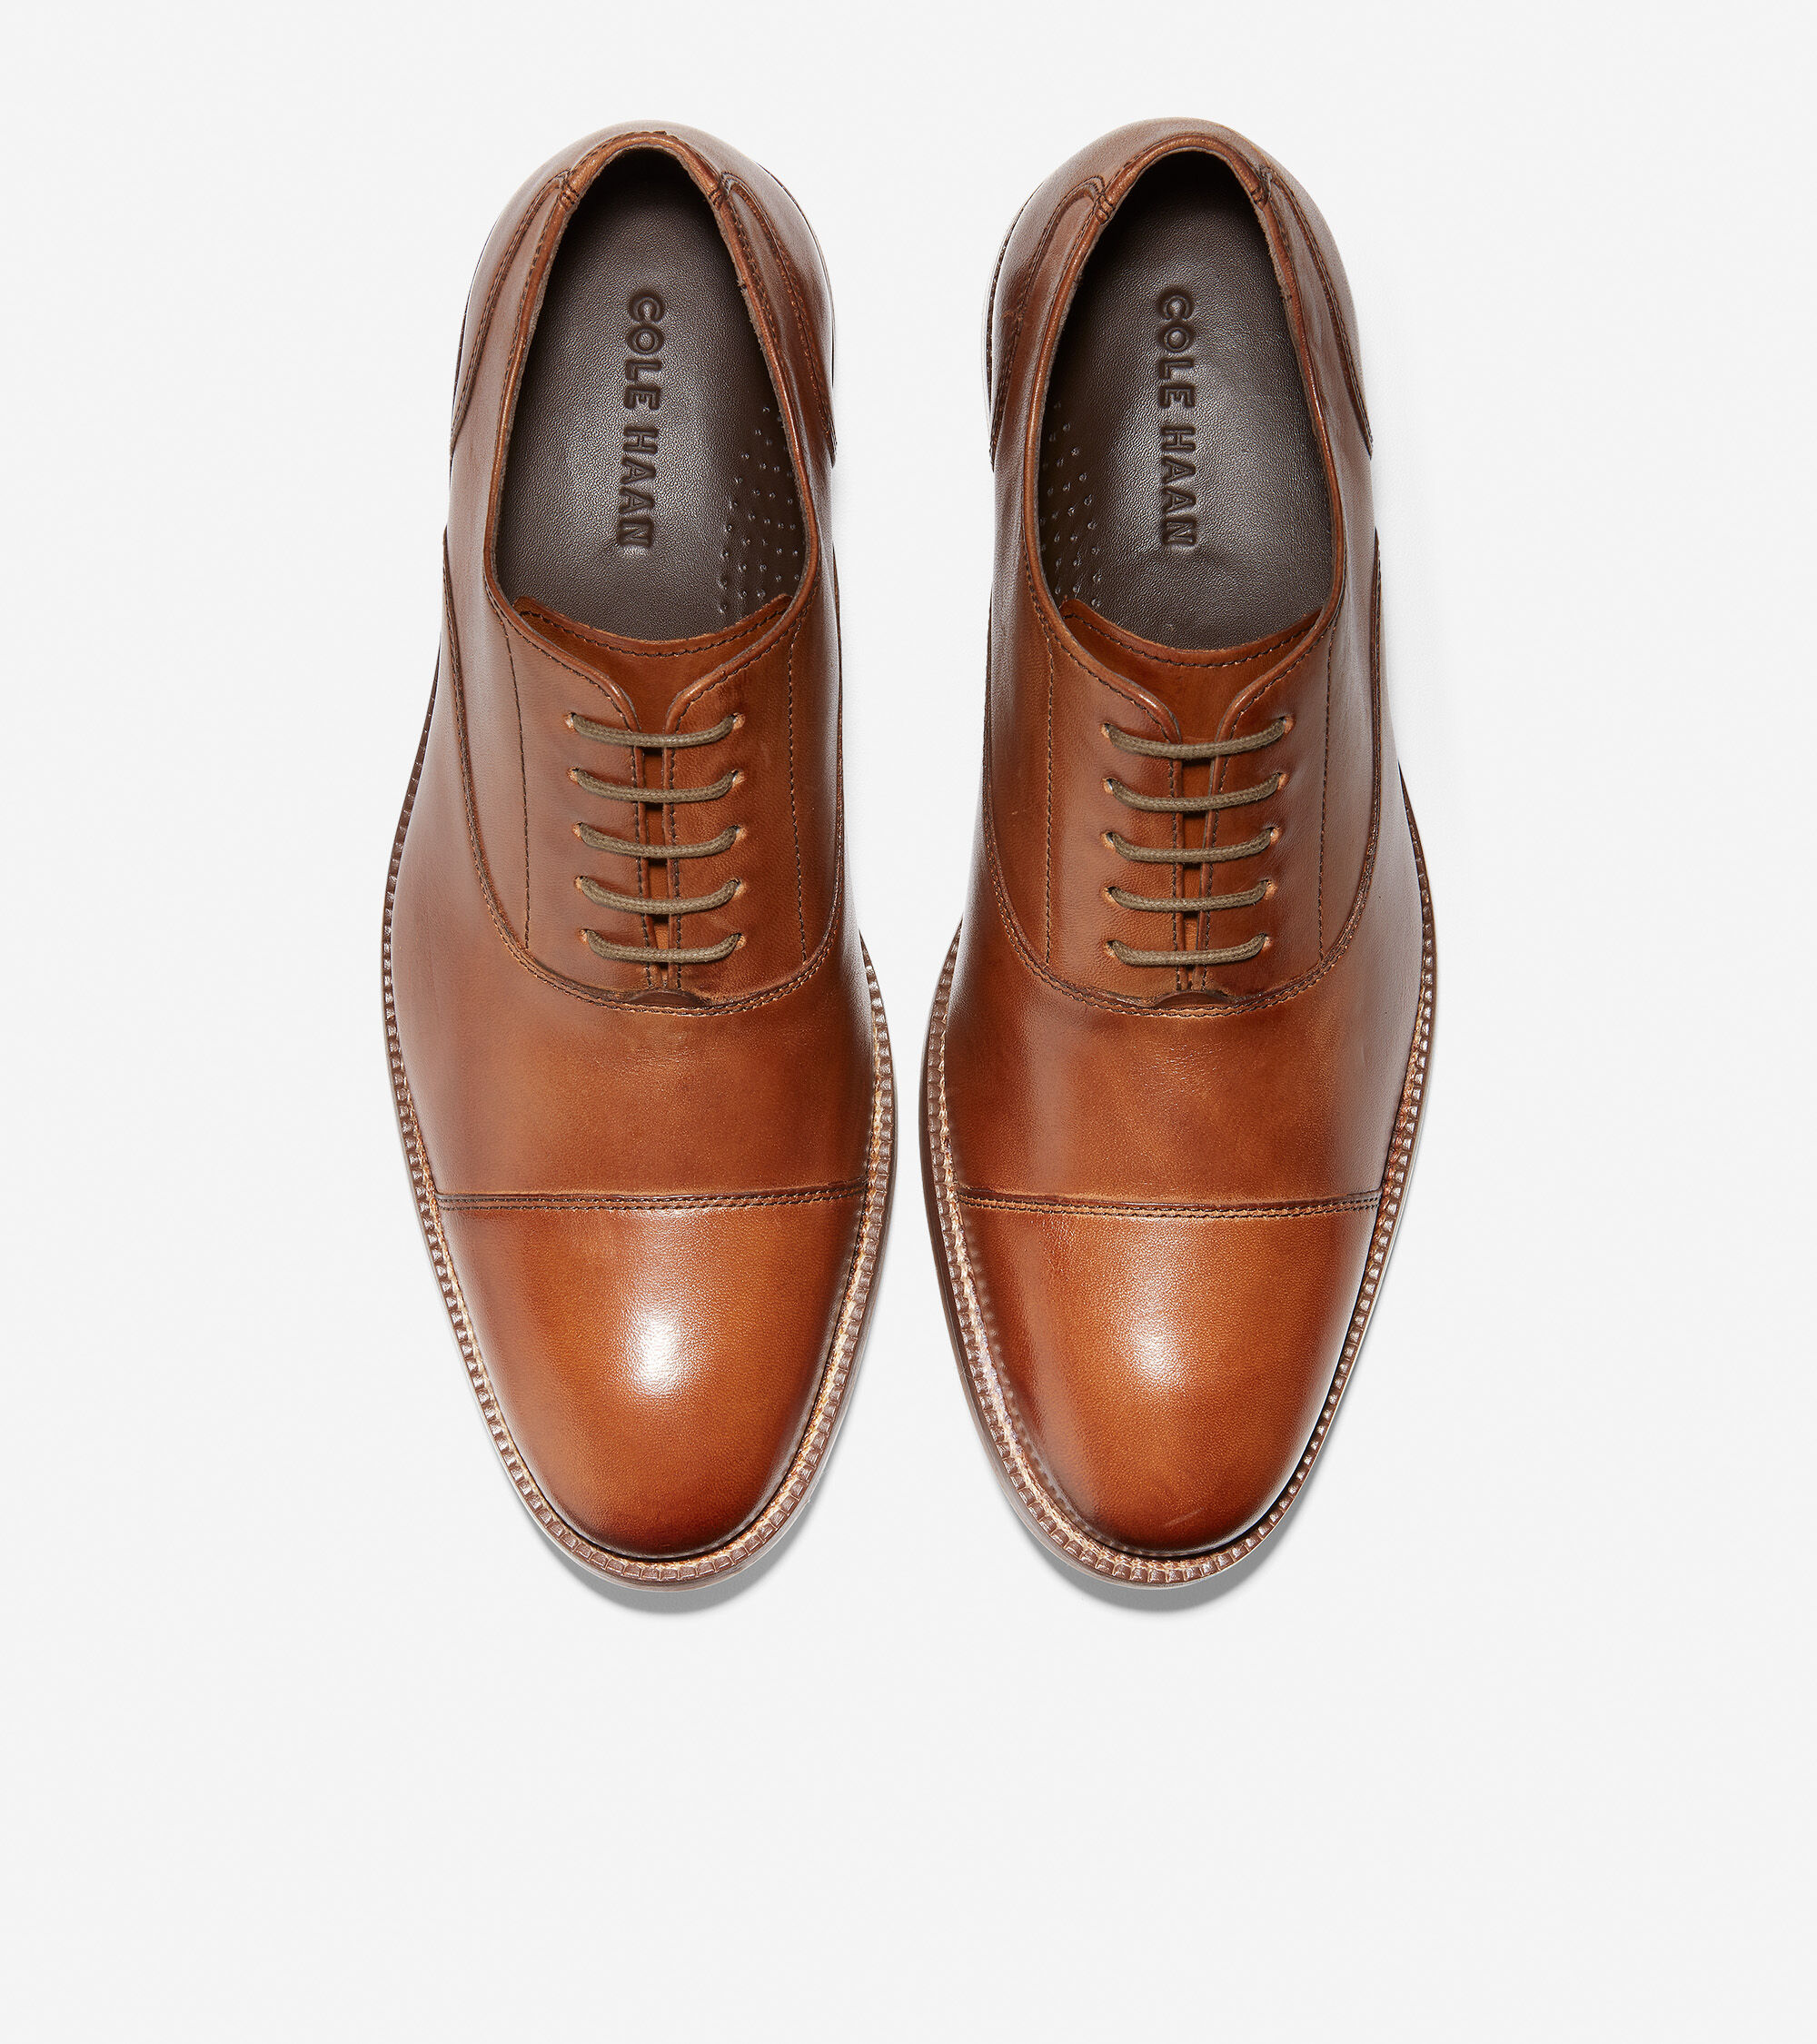 Cole Haan Cambridge Plain Oxfords Dress Shoes British Tan Leather 